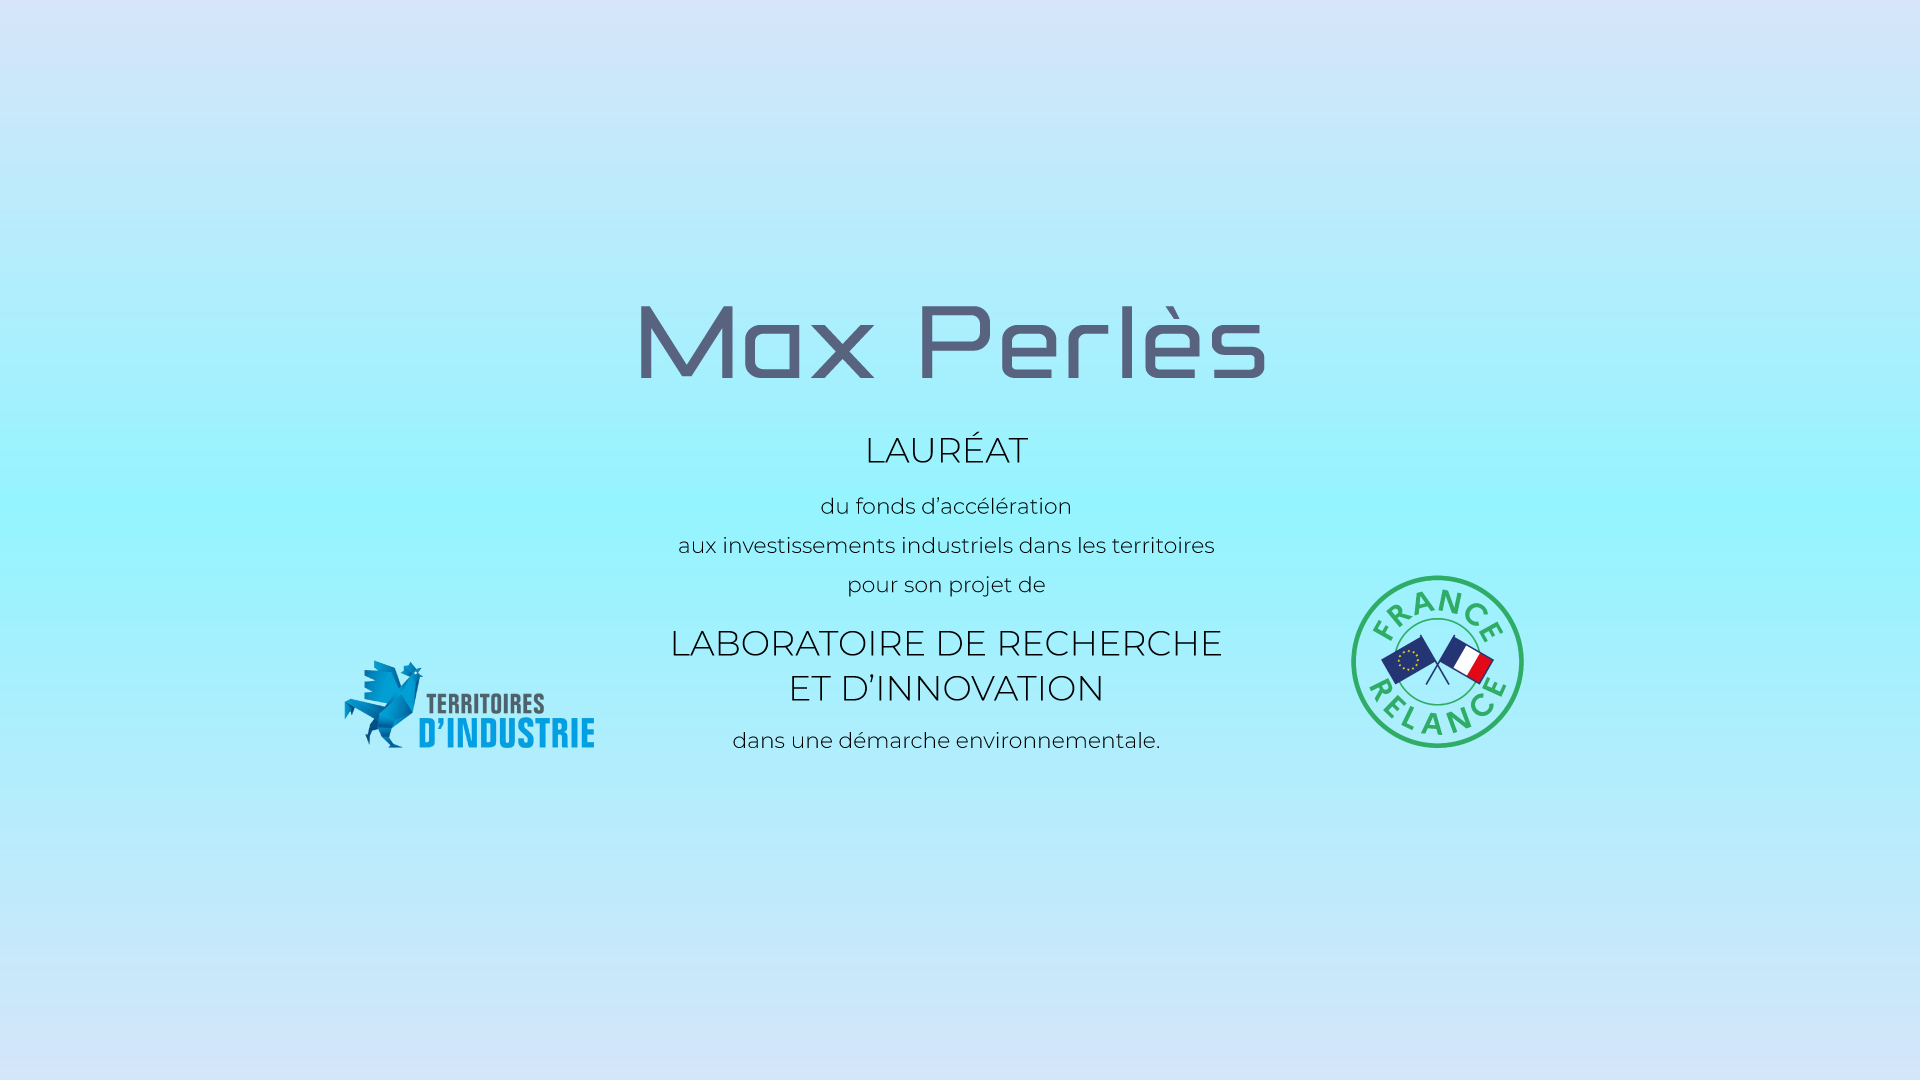 Max-Perlès-Lauréat-fond-acceleration2